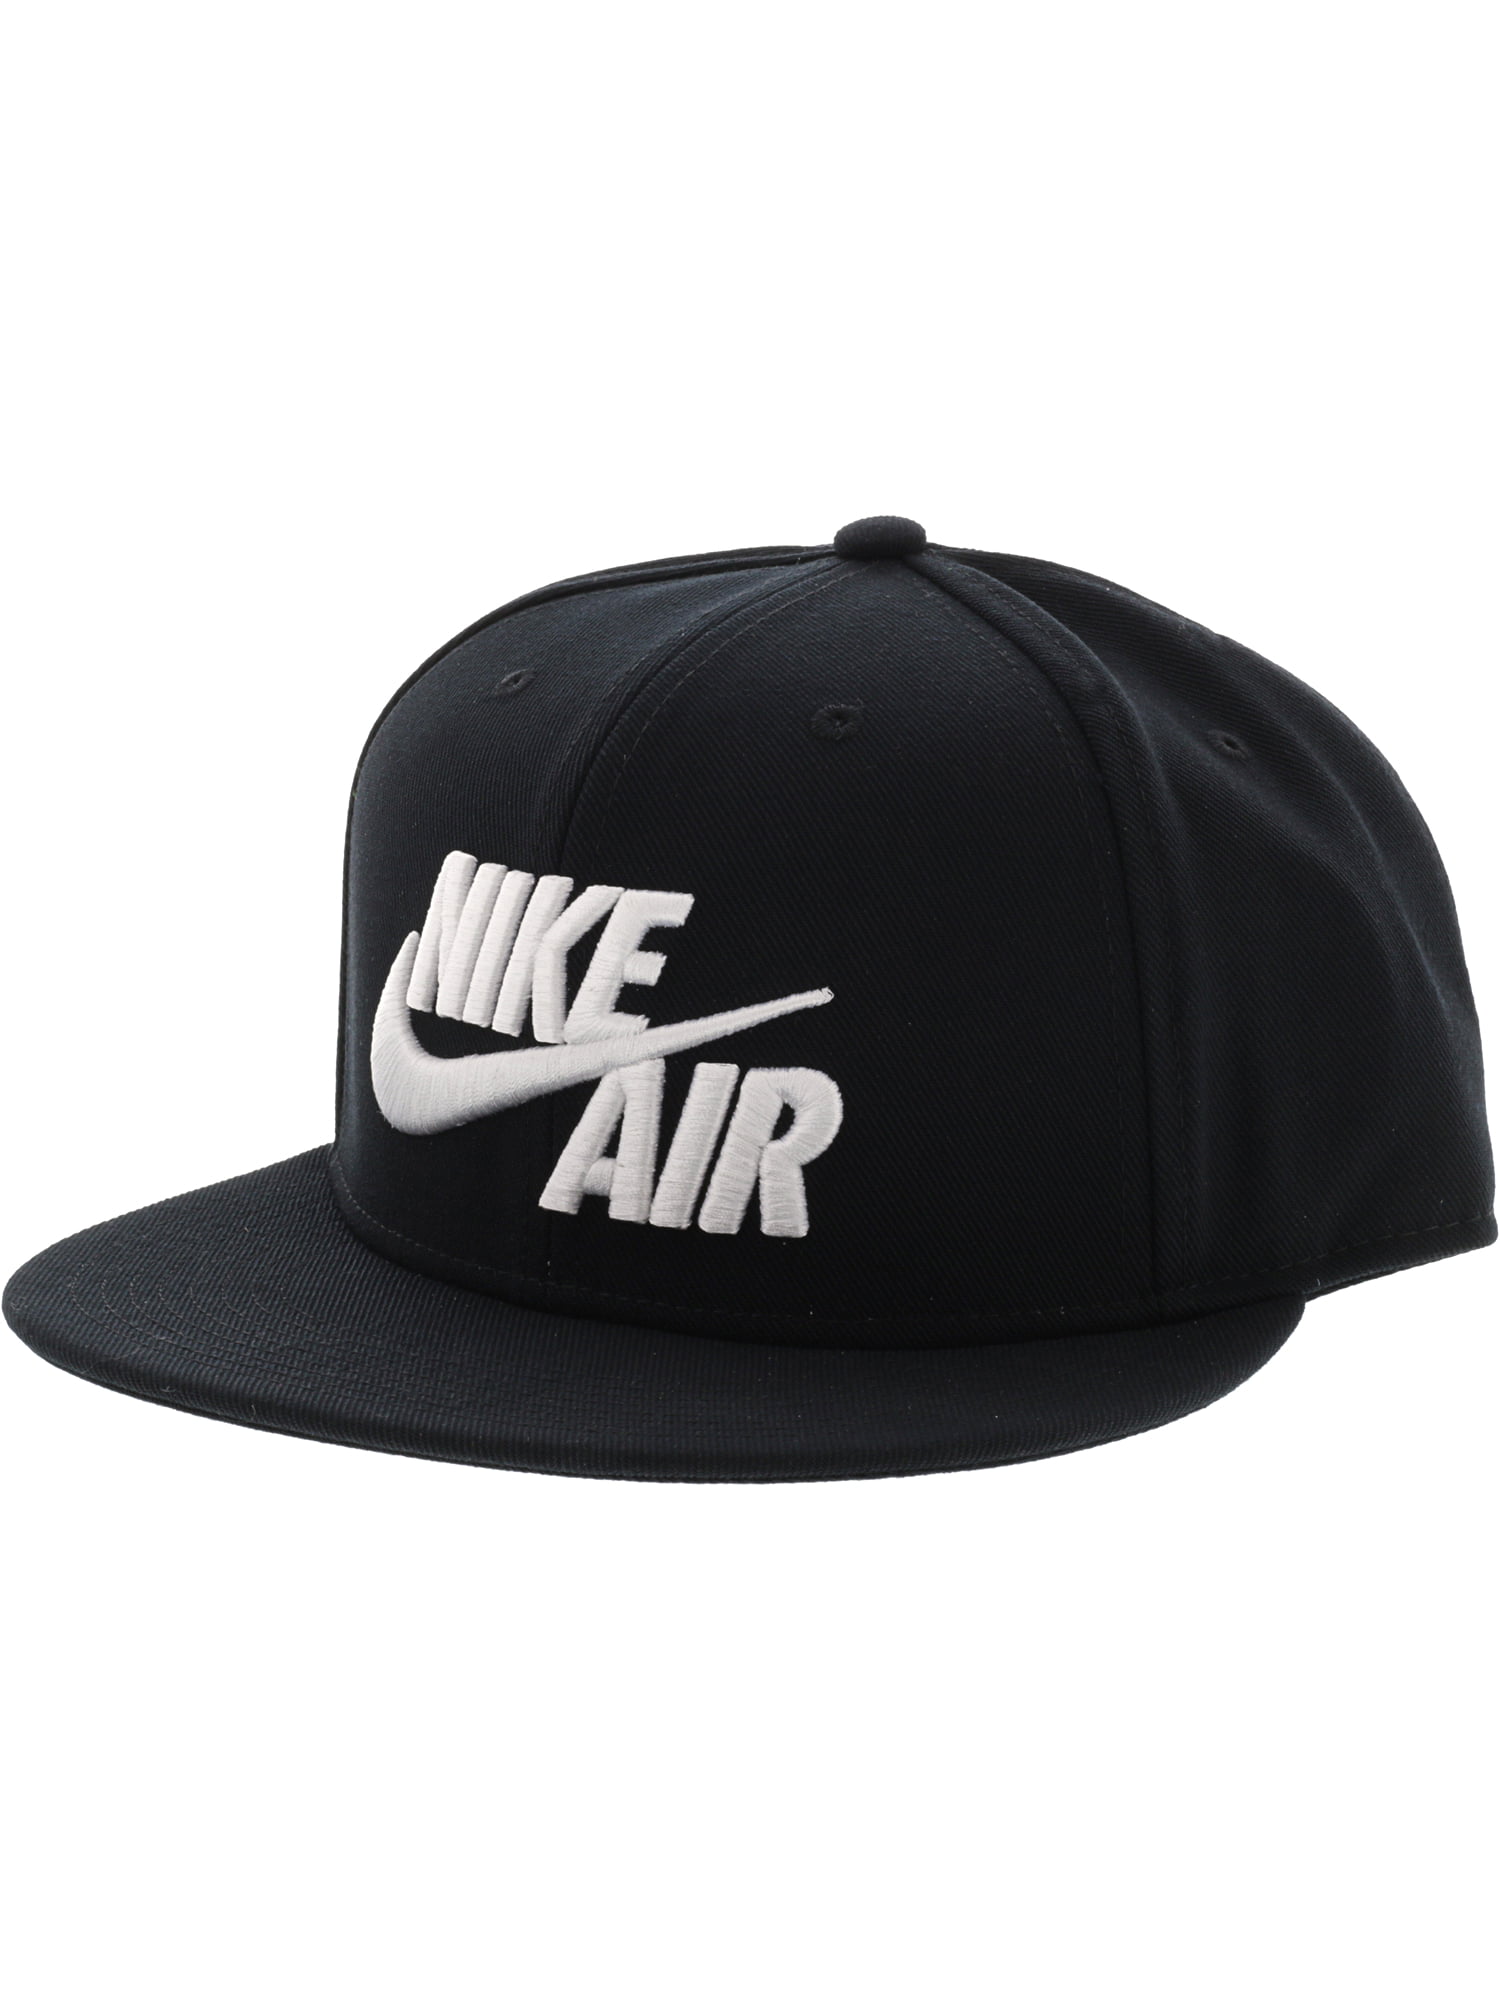 Nike Air True Snapback Hat NIKU-AIRTRUESNAPBA-BLACKWHI180.ONESIZE ...